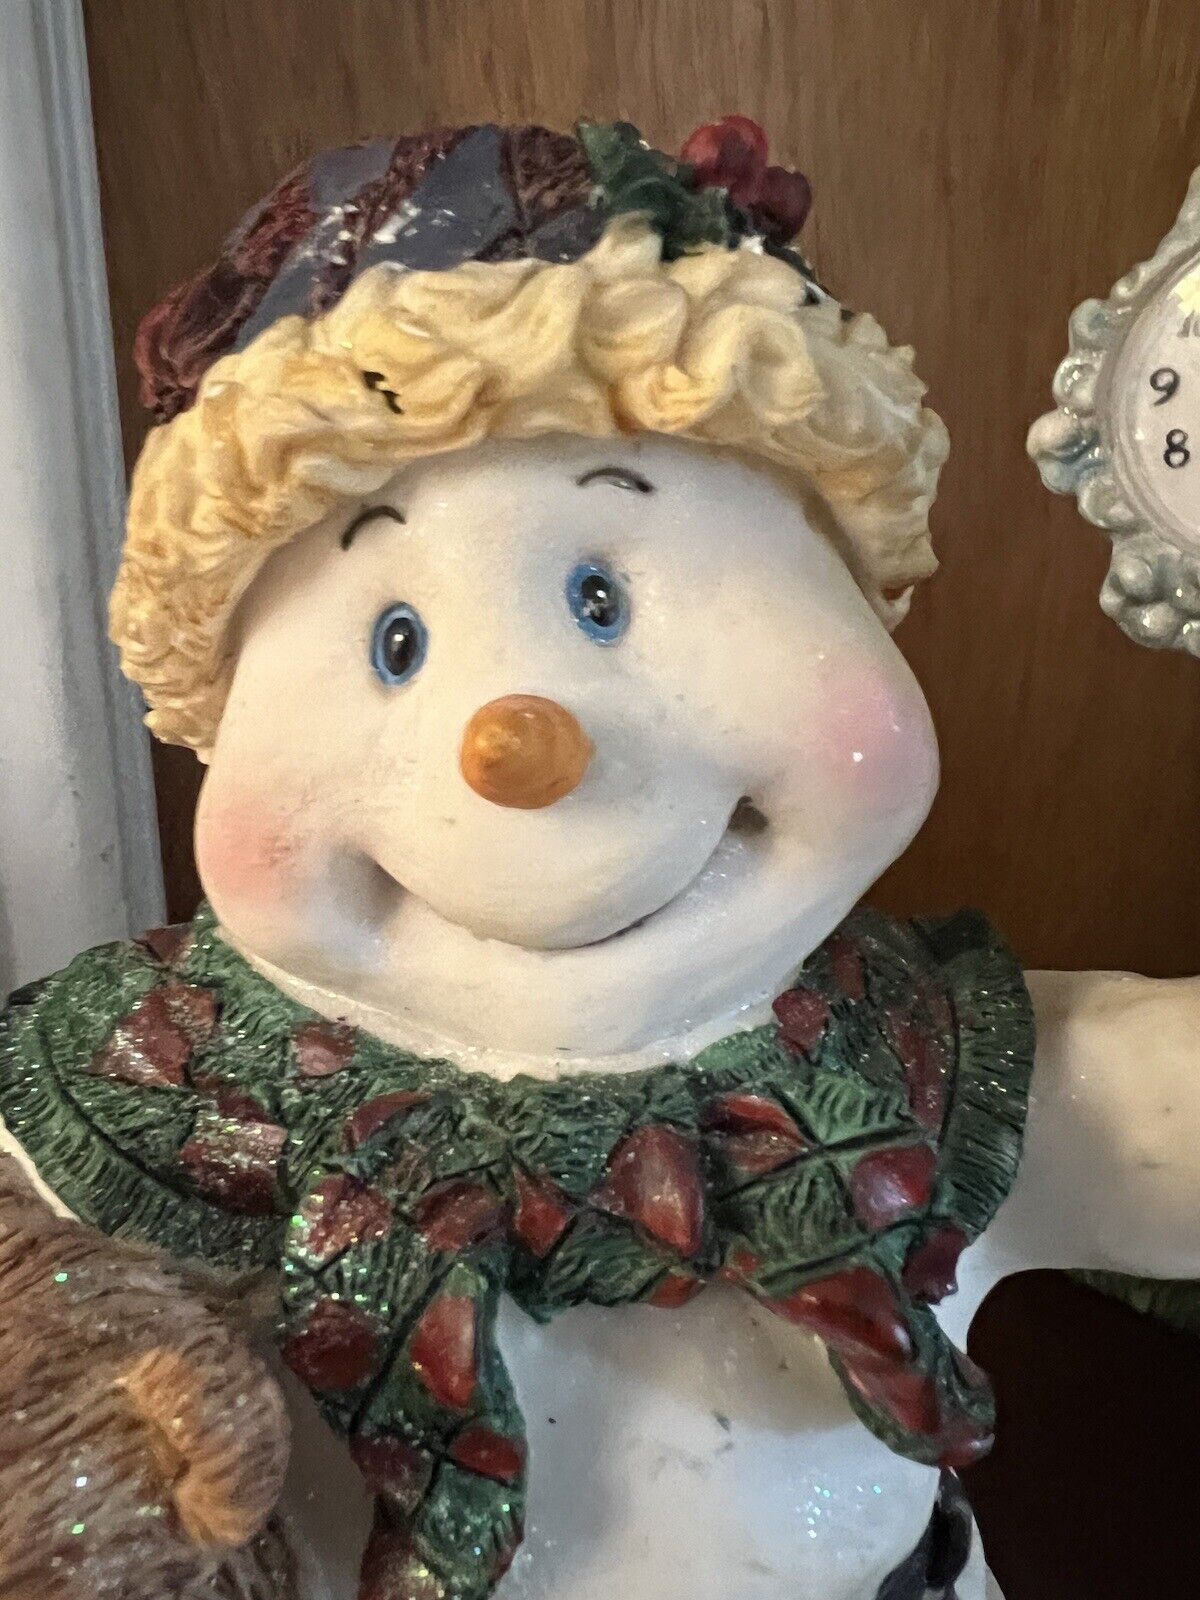 Vintage Snowman Figurine Holding A Teddy Bear